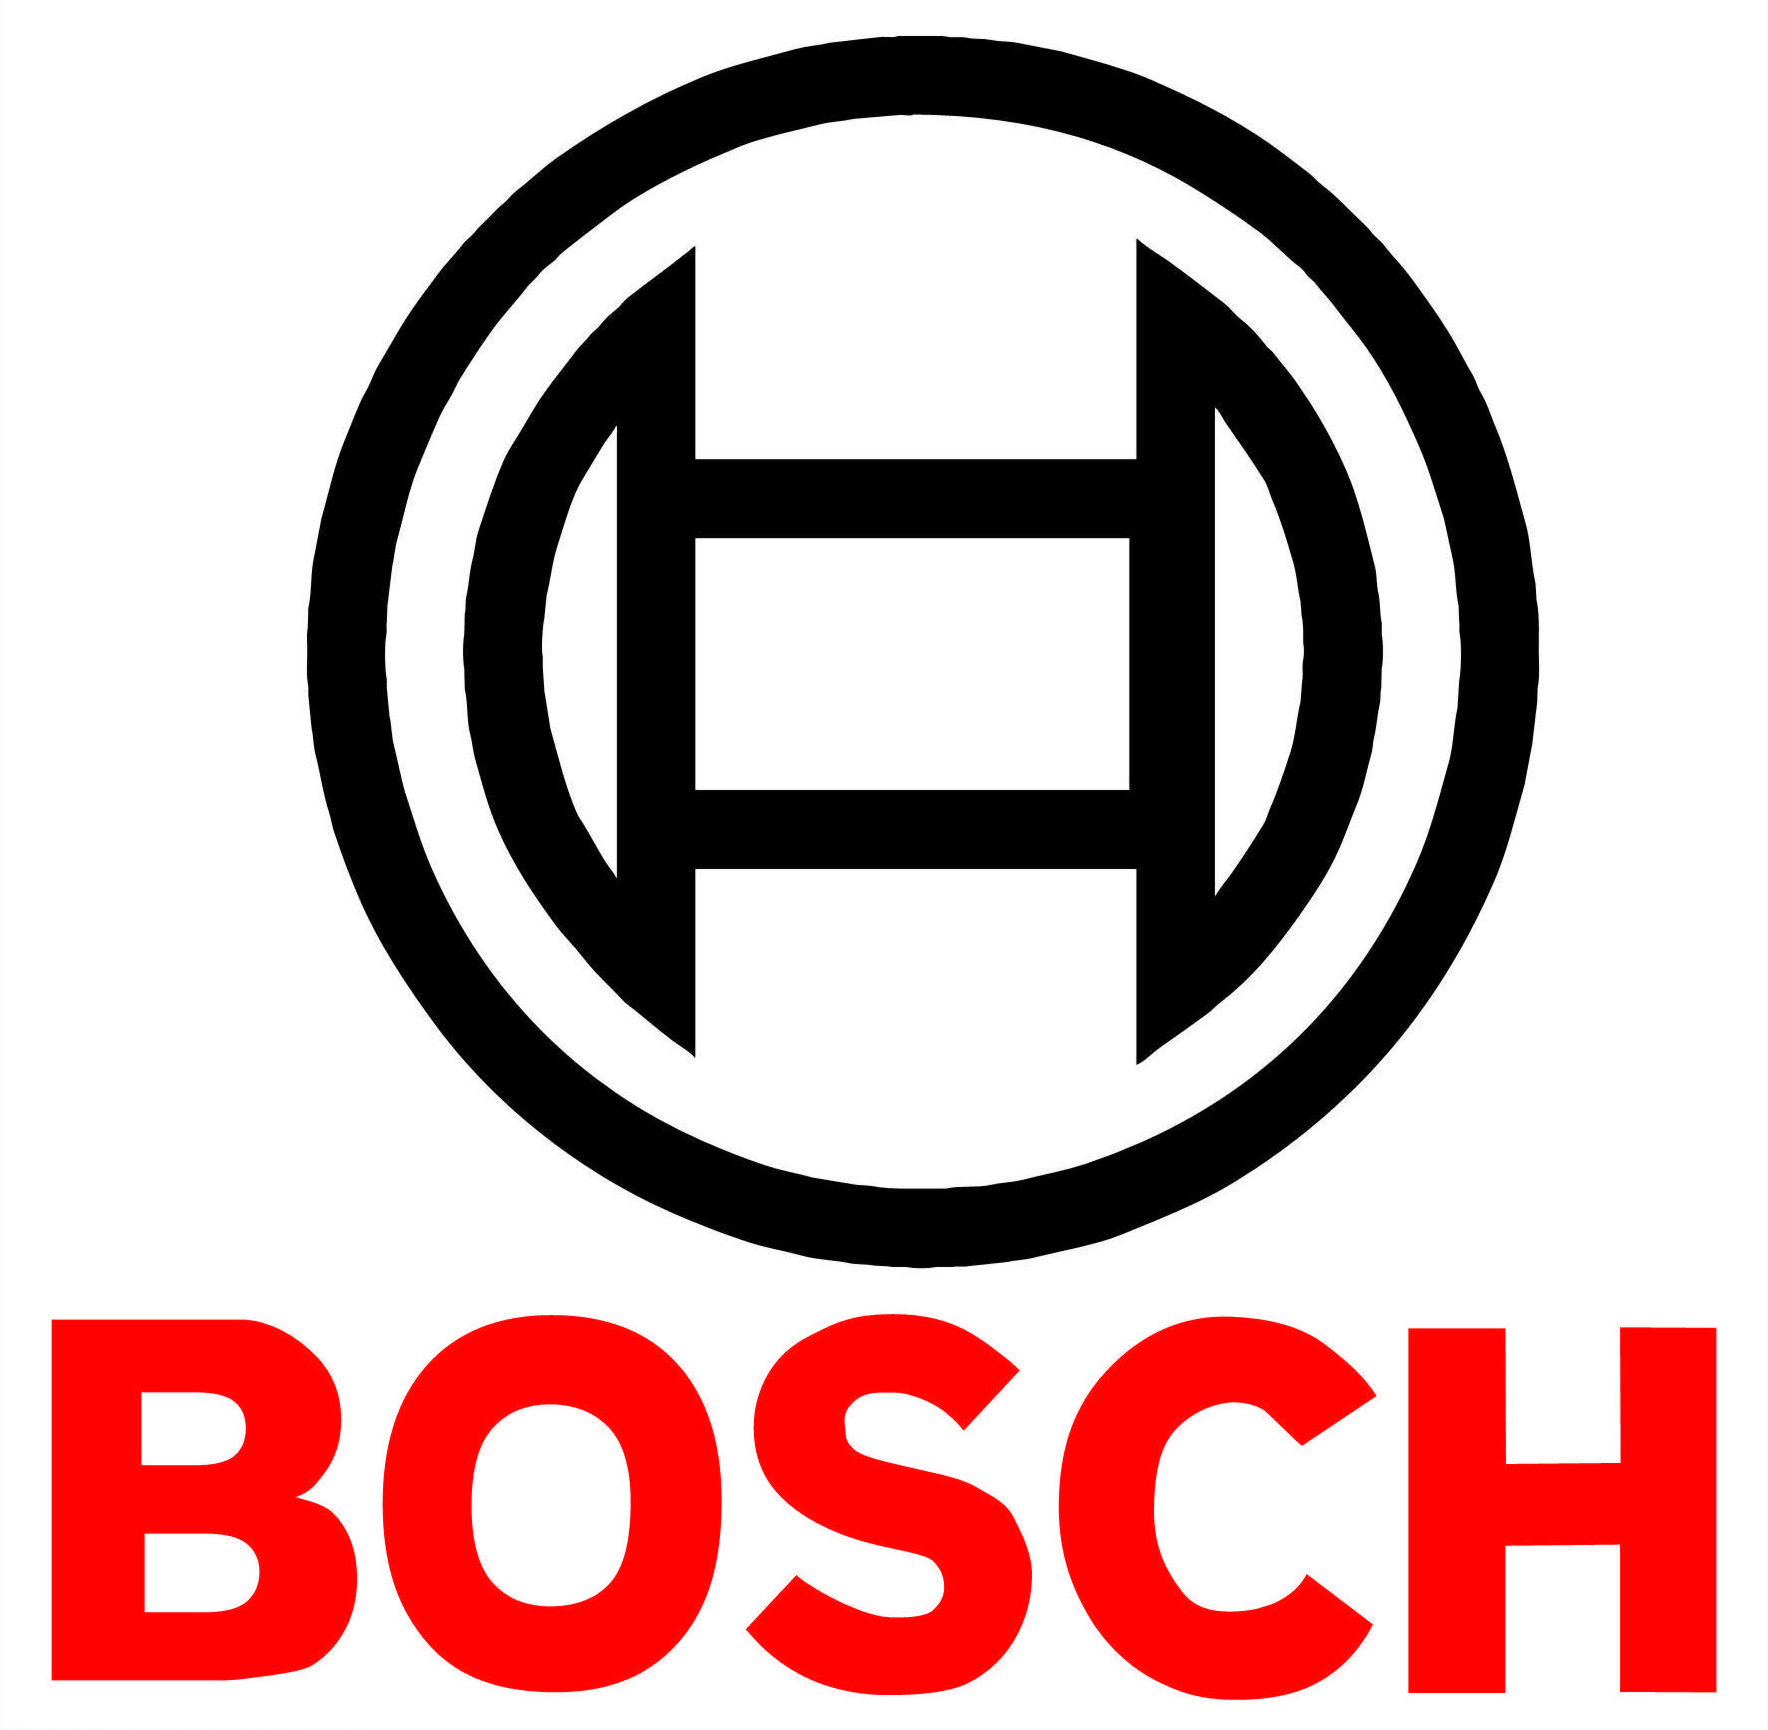 Bosch - Modern Auto Parts 